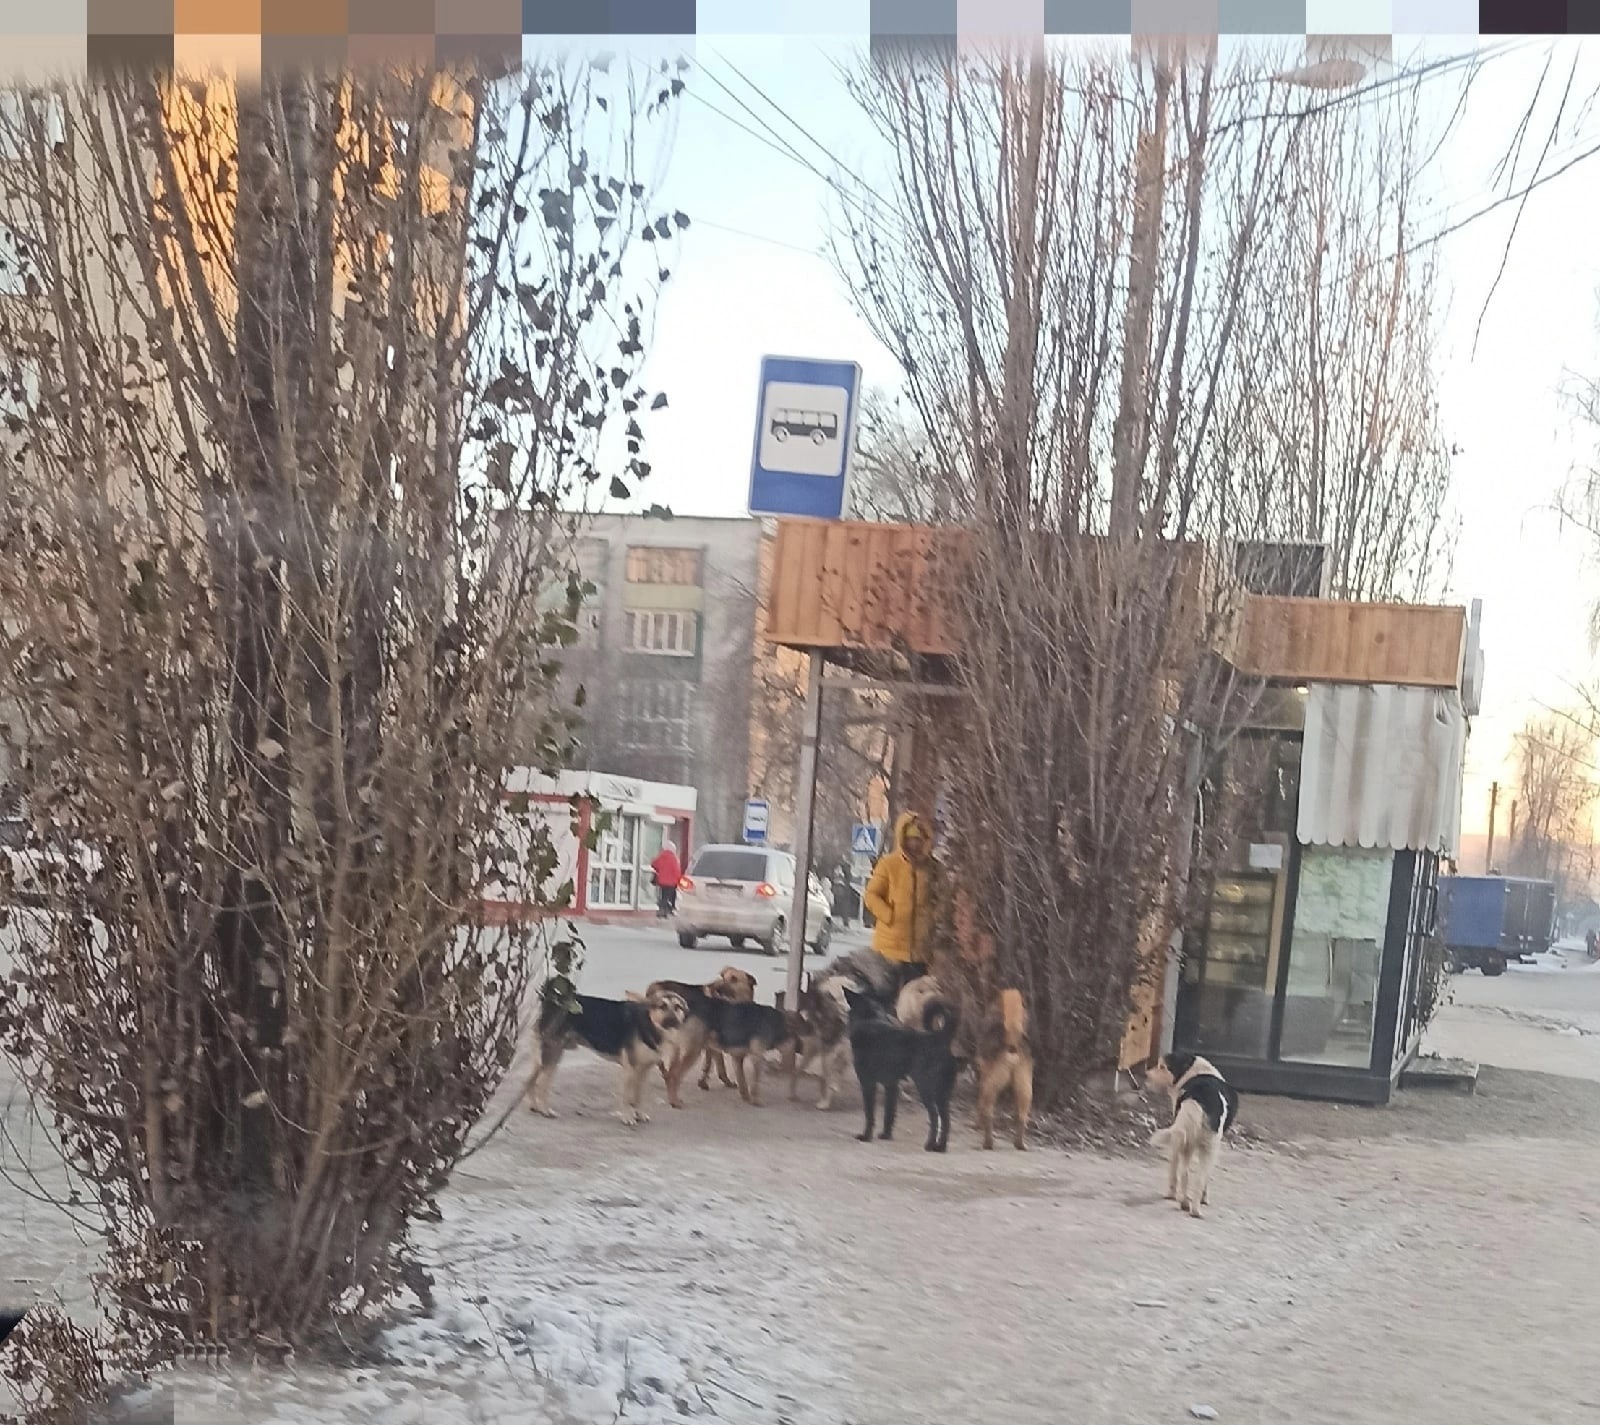 Жители Кузнецка: "Стаи бездомных собак бросаются на детей"